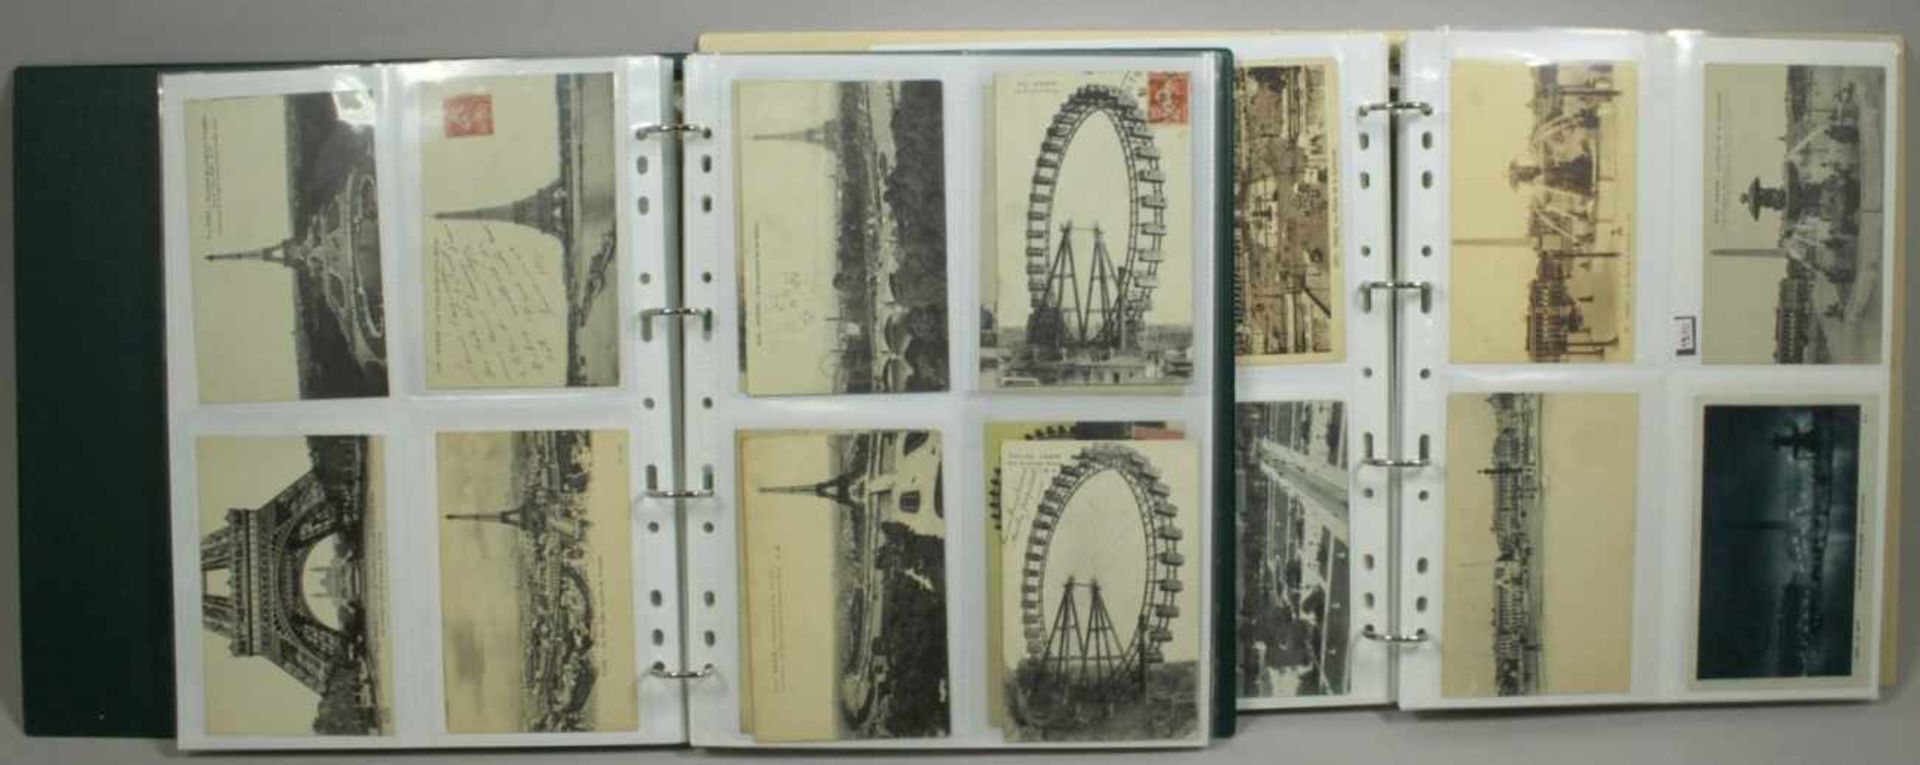 Konvolut Postkarten, mehrere hundert, in 2 Alben, Frankreich, um 1900 - 1930,unterschiedliche